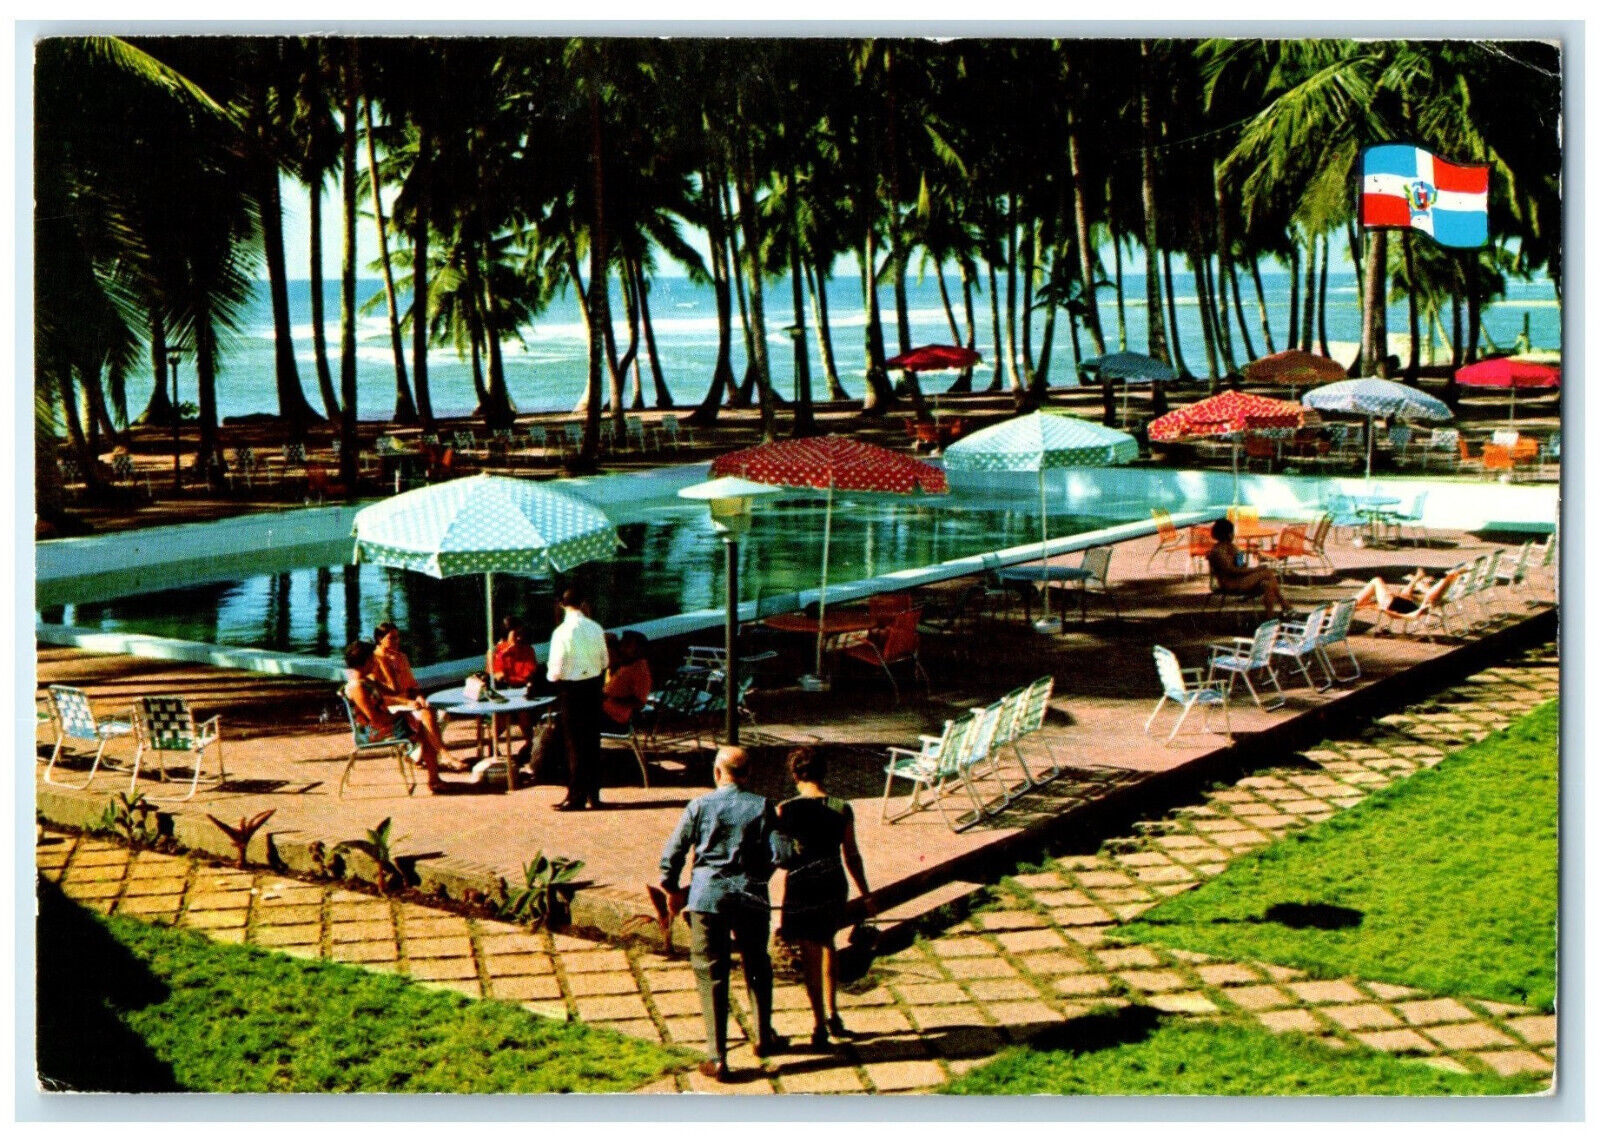 1979 Hotel Villas Del Mar Swimming Pool San Pedro De Macorix Dominicana Postcard